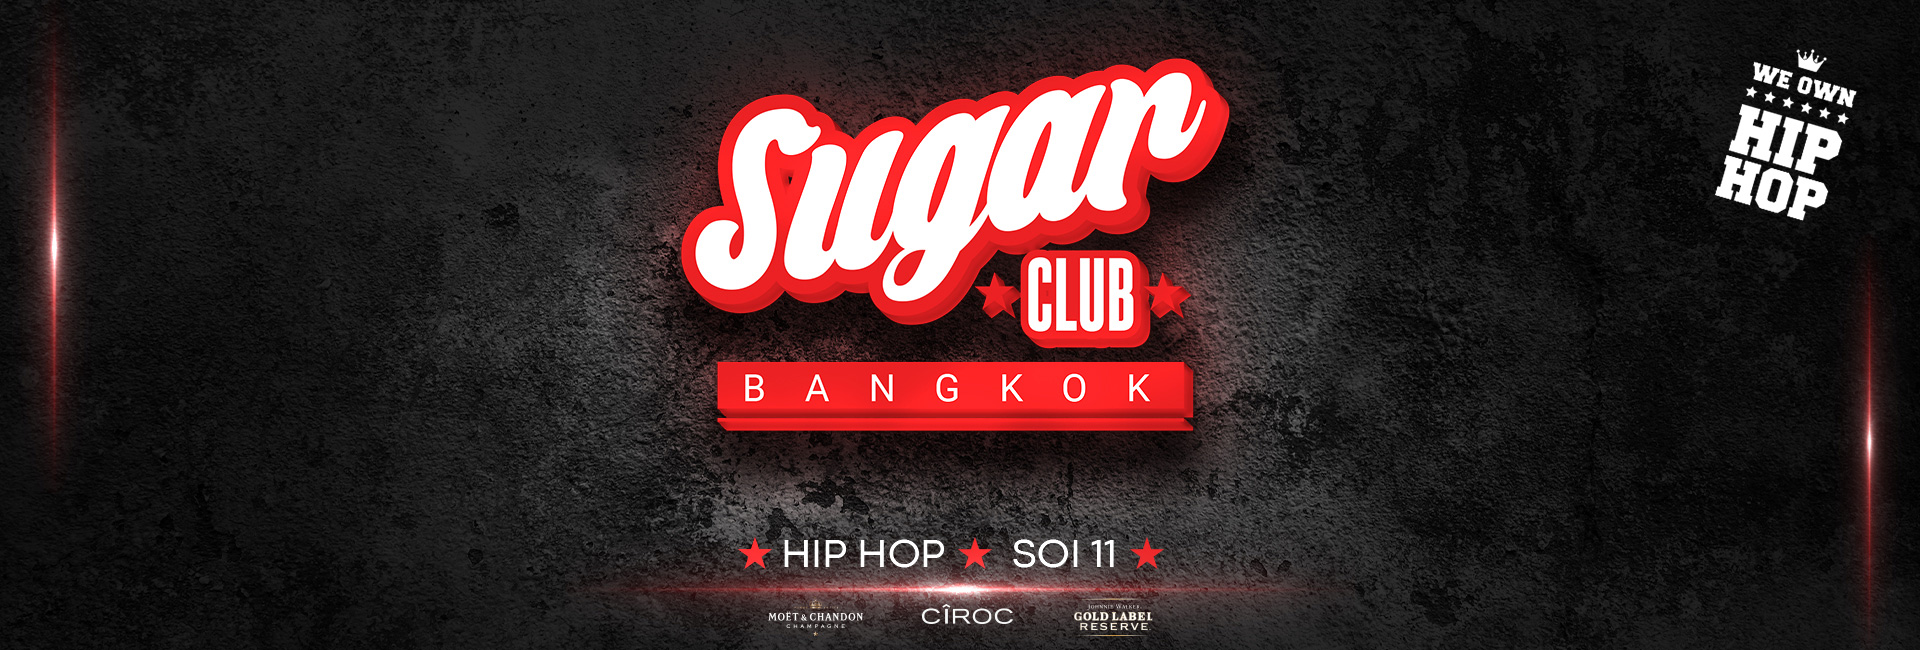 Thailand's no.1 hip hop club